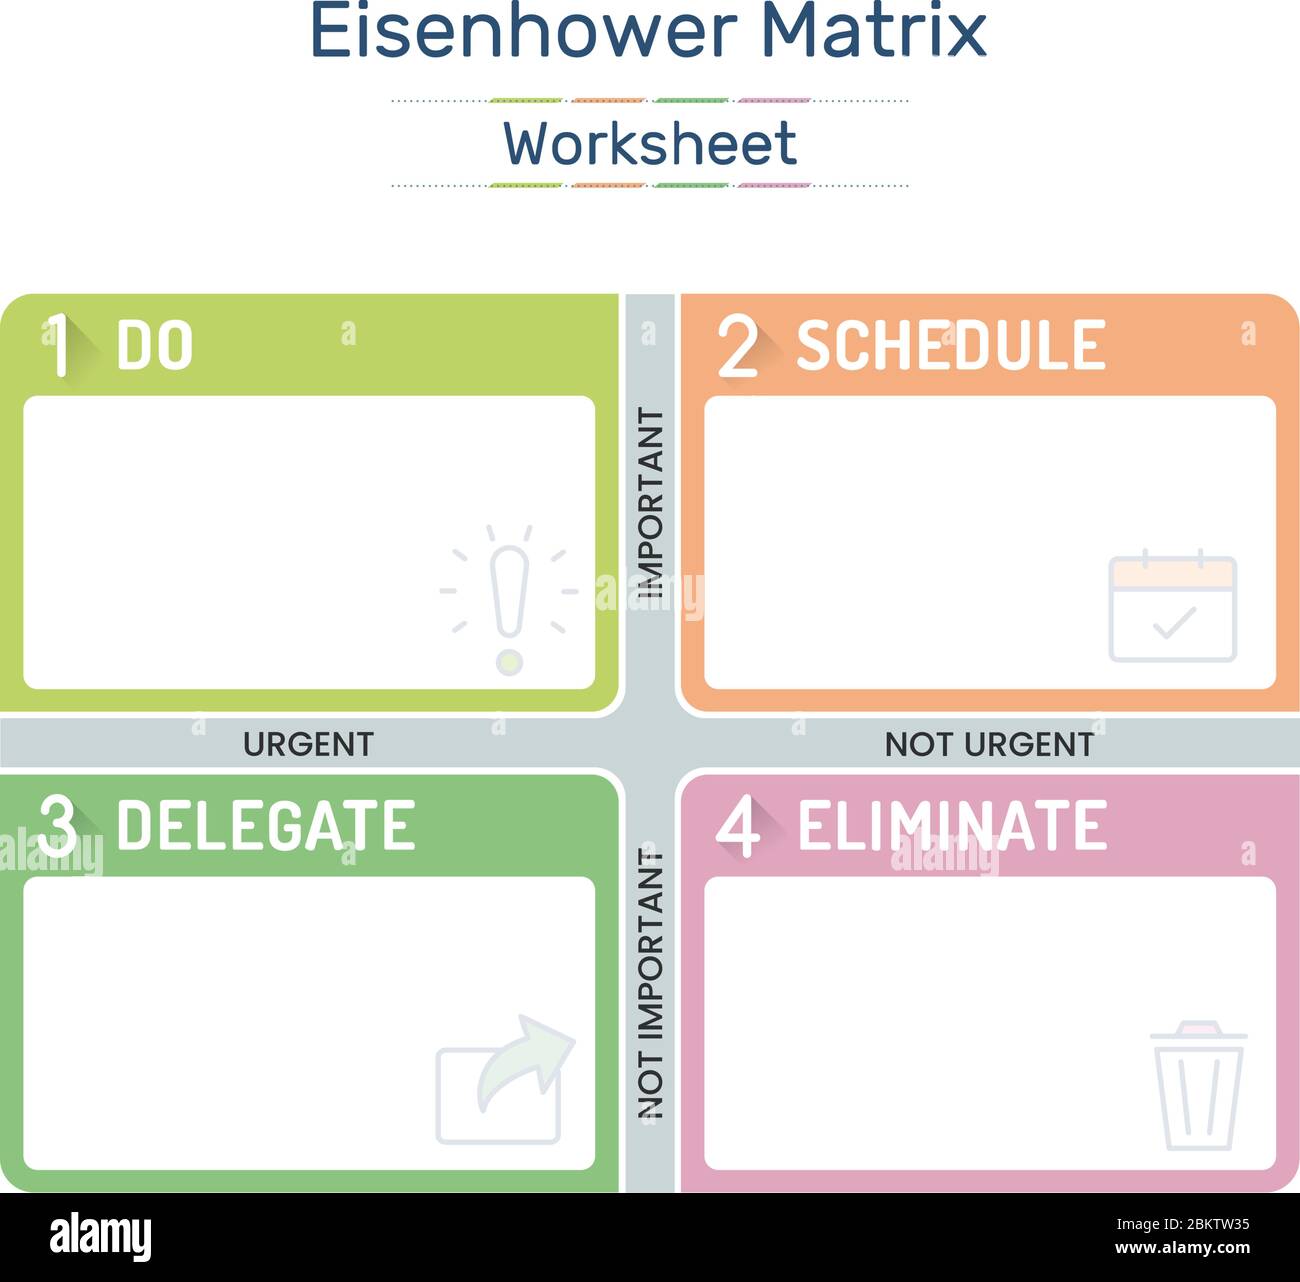 Eisenhower Matrix, dringende wichtige Matrix, Aufgabe priorisieren, Aufgabenmanagement, Projektmanagement, Prozess-Infografiken Stock Vektor